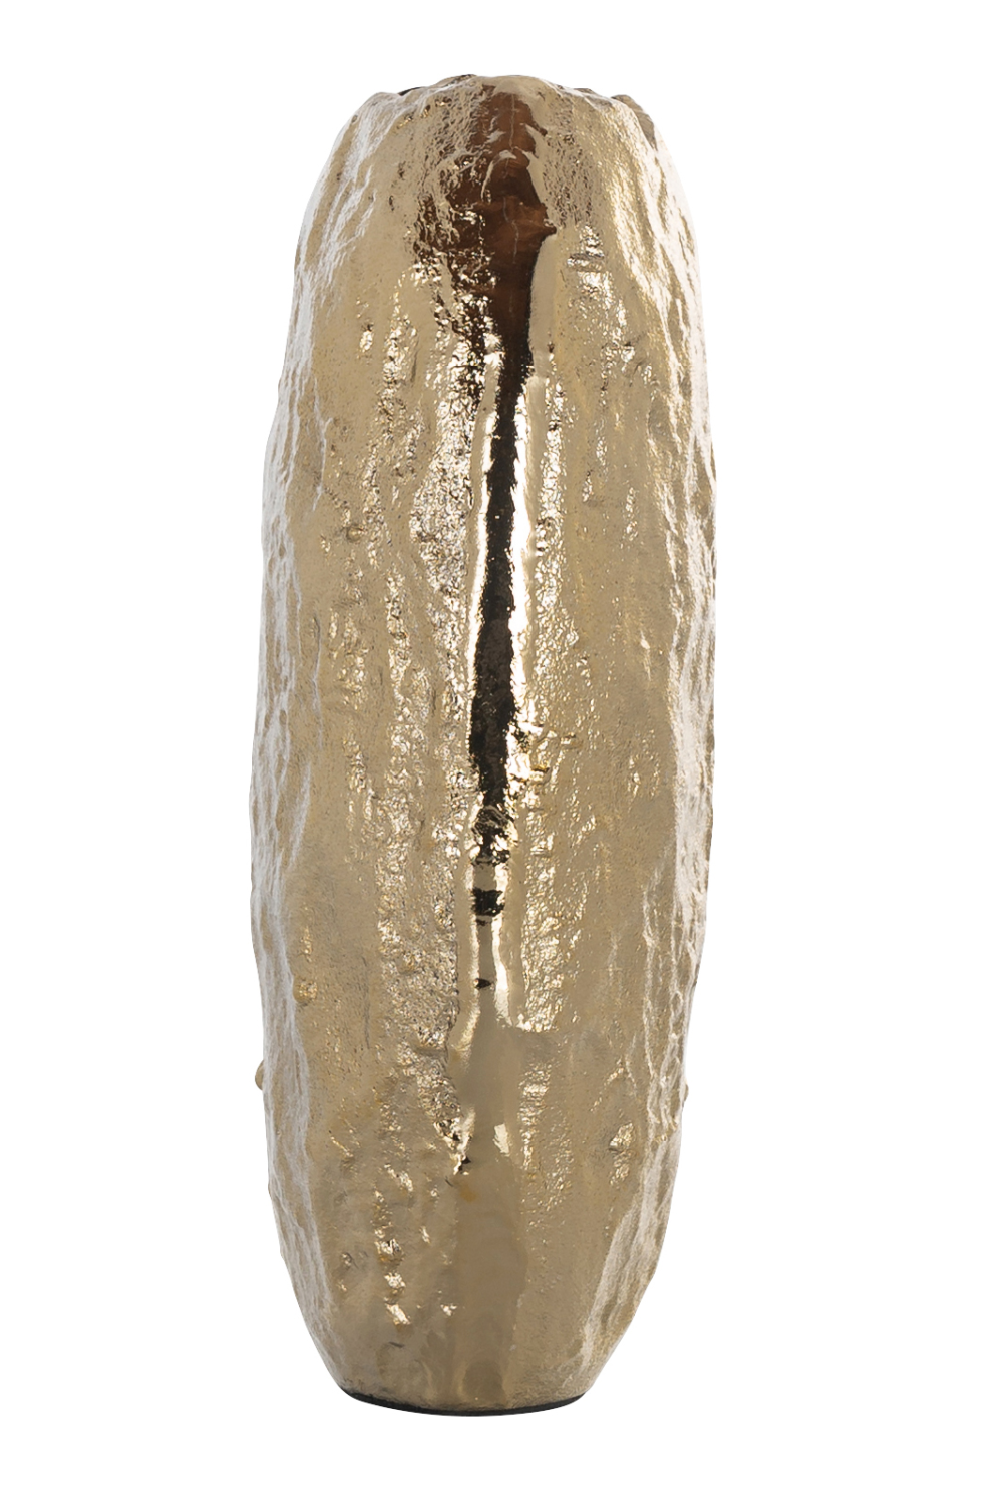 Gold Rustic Textured Vase | OROA Liona | Oroa.com